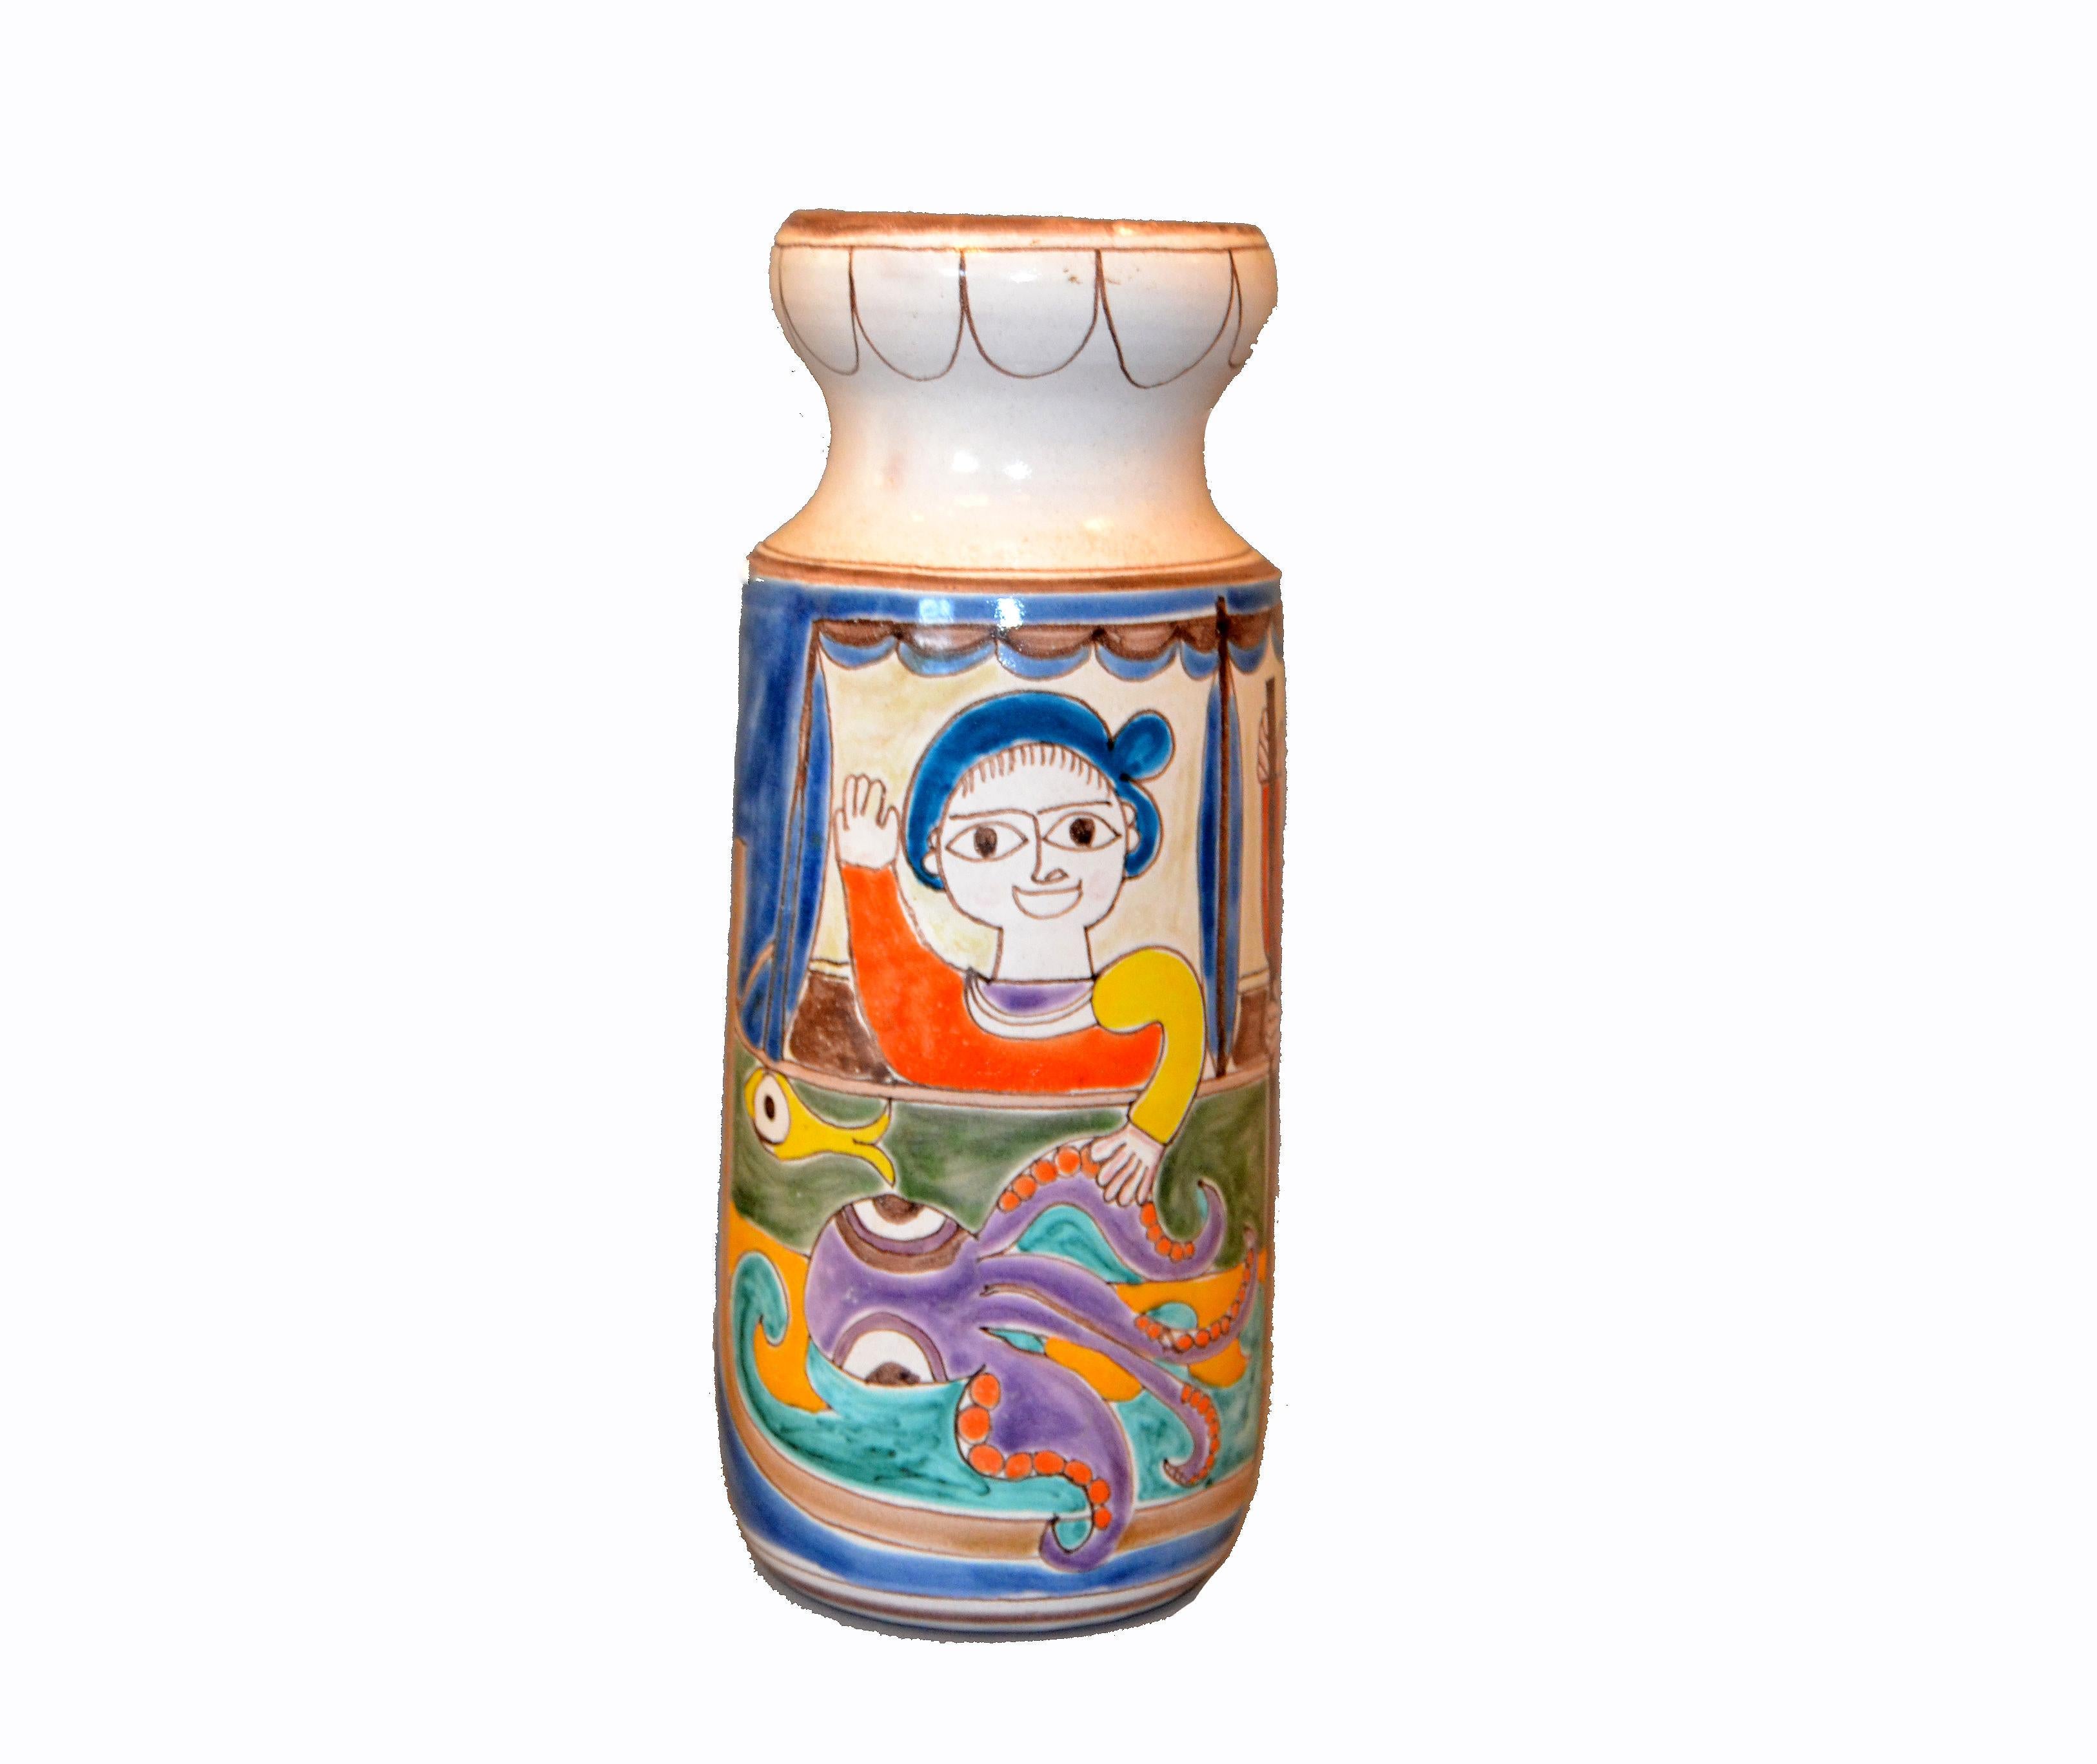 Original italien Giovanni DeSimone peint à la main grand vase de fleurs en poterie d'art, navire.
La peinture sur vase émaillé représente deux pêcheurs en train d'attraper des poissons et des poulpes.
Marqué et numéroté sur le dessous, 